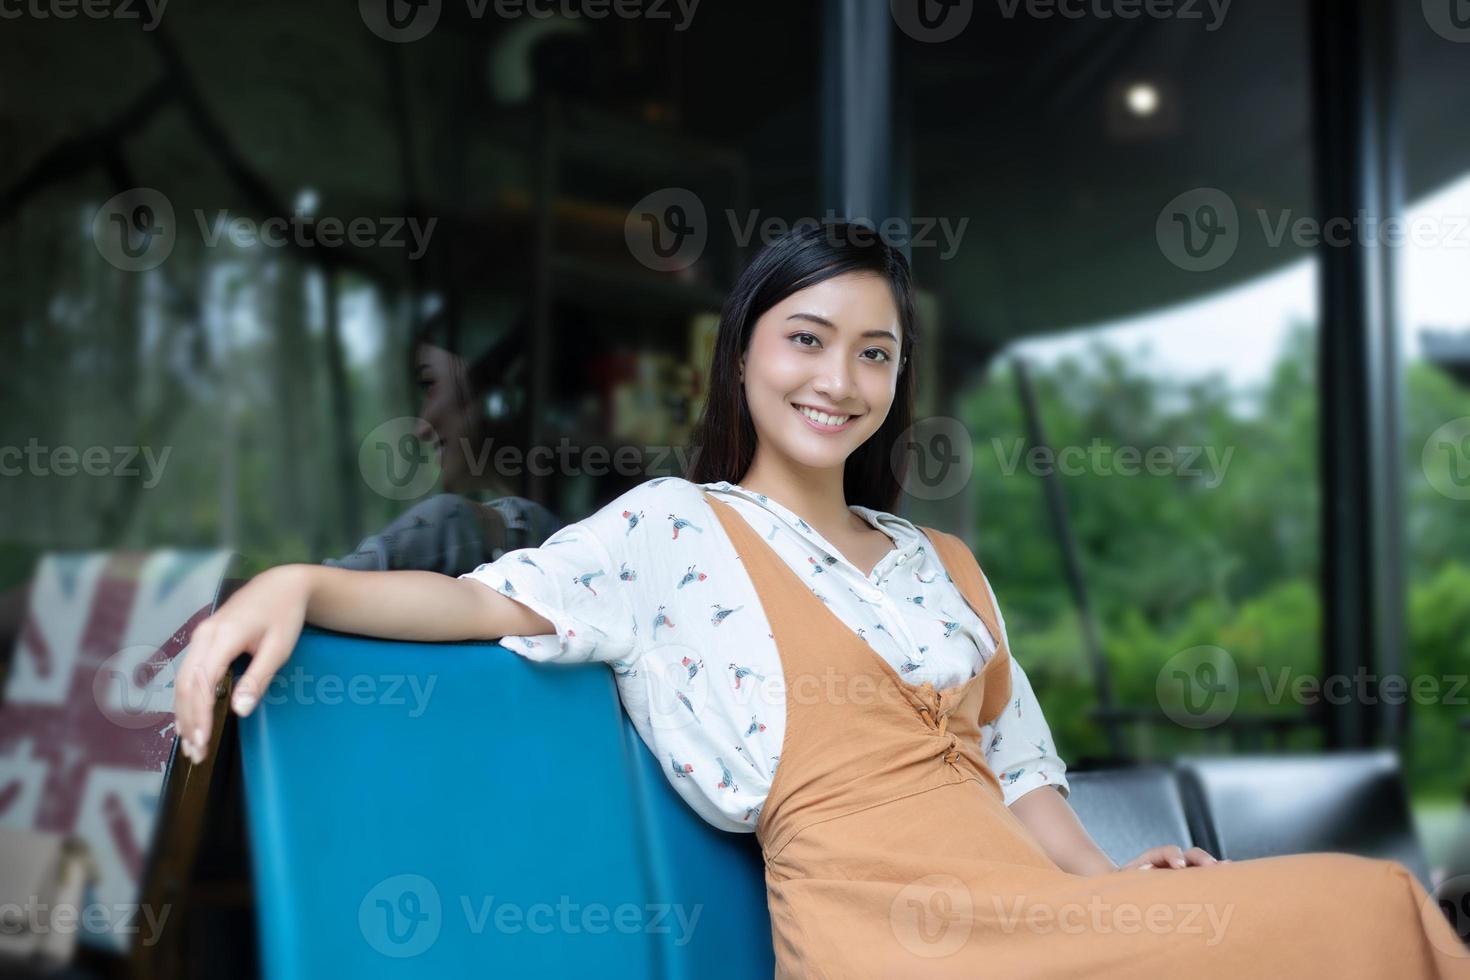 femmes asiatiques souriantes et heureuses de se détendre dans un café après avoir travaillé dans un bureau réussi. photo